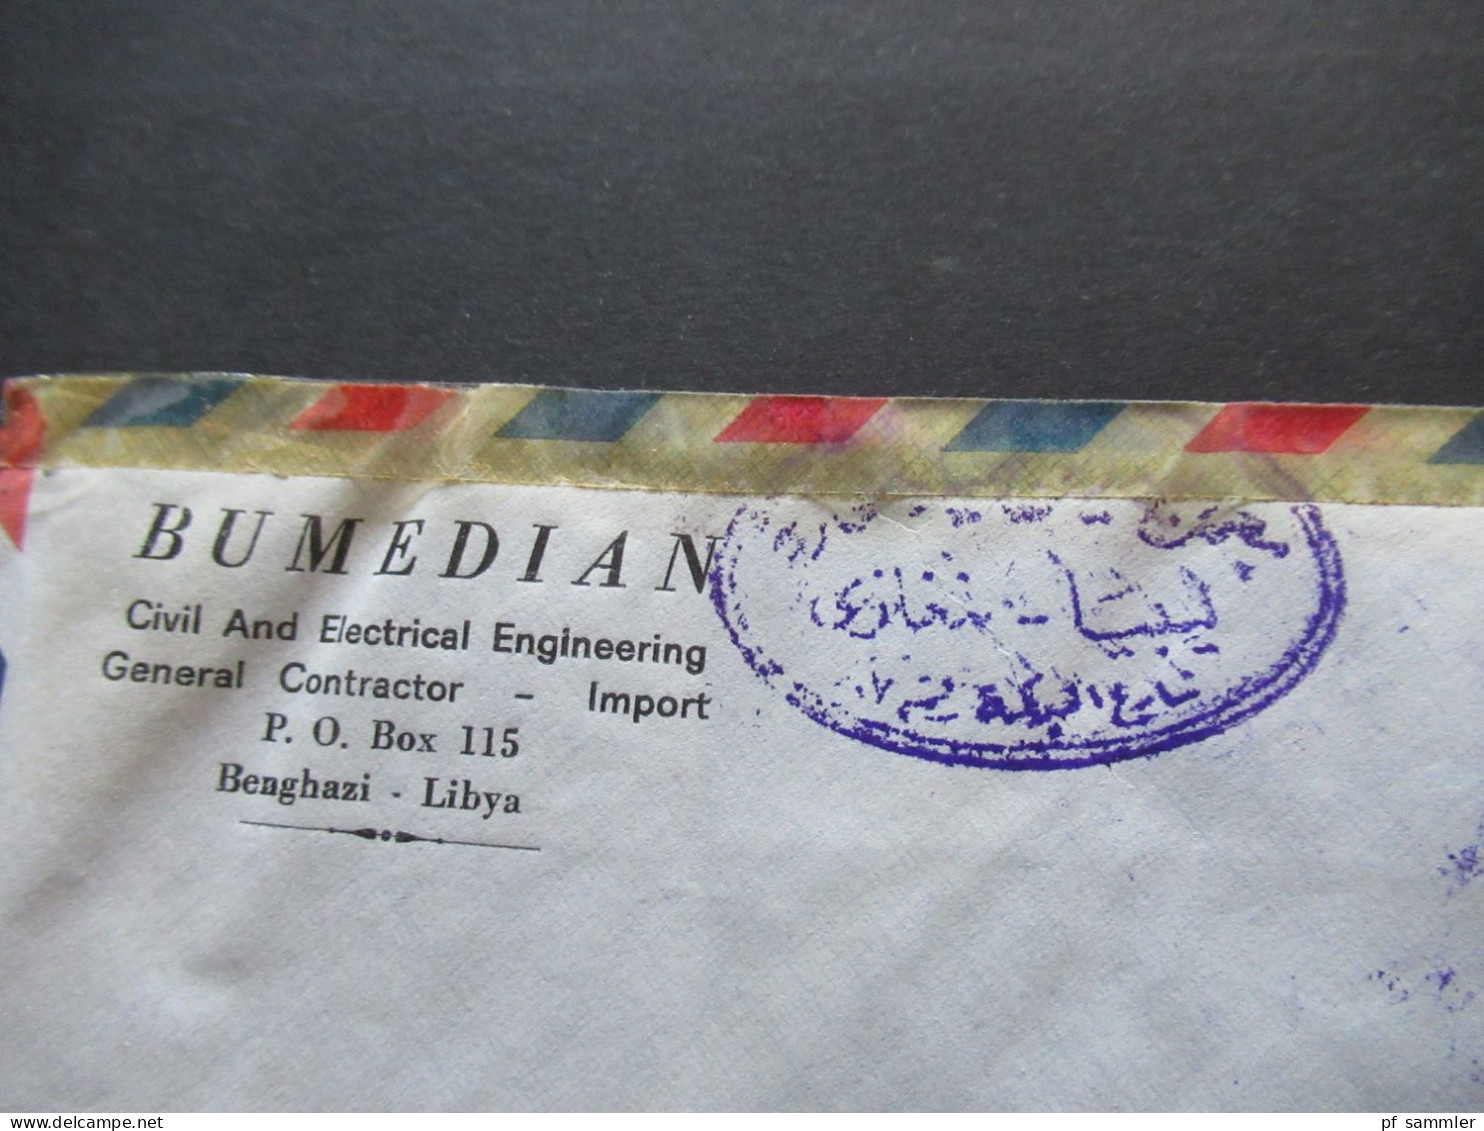 Afrika 1966 Libya Air Mail Mit Dreieckmarke Und Violetter Stempel Bumedian Benghazi Libya Nach Menden Gesendet - Libya